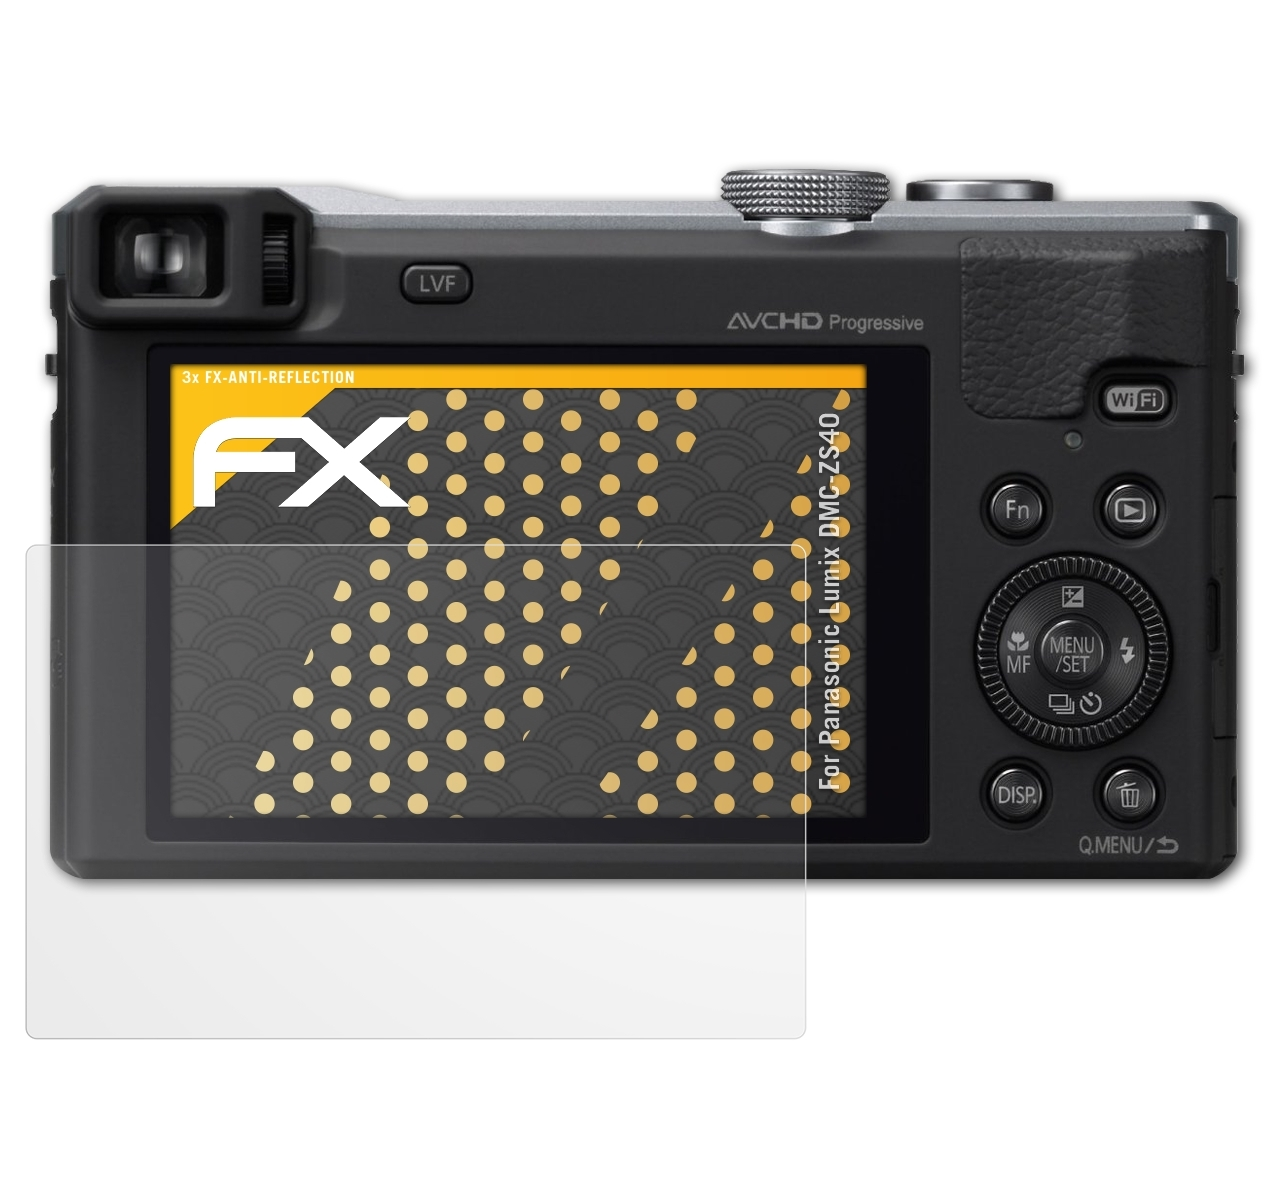 ATFOLIX 3x FX-Antireflex Displayschutz(für Lumix Panasonic DMC-ZS40)